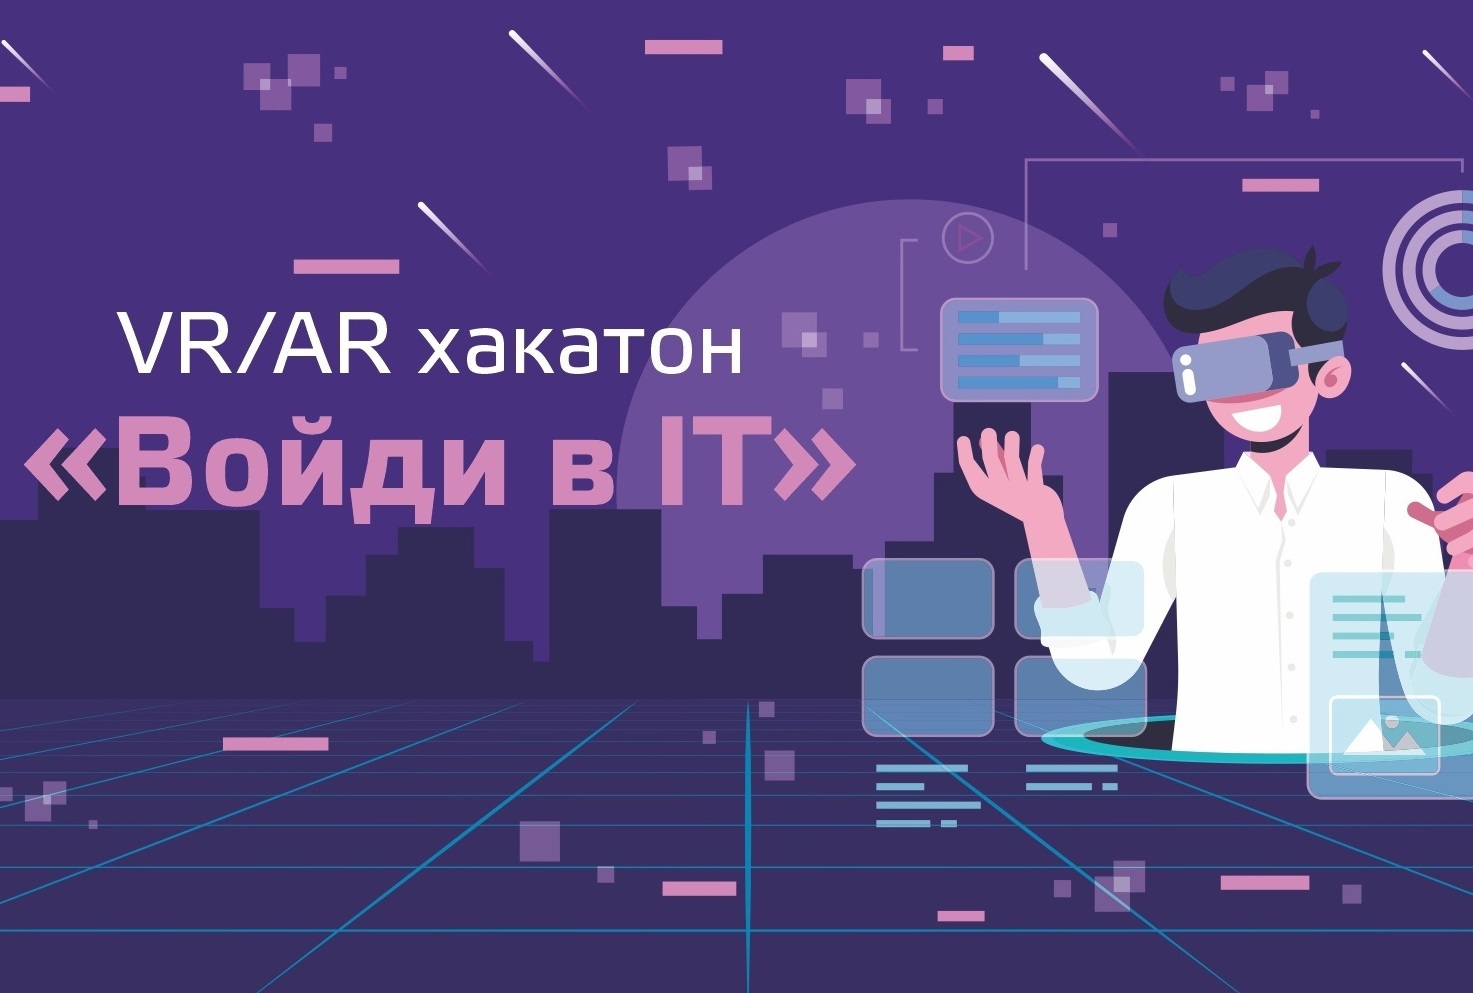 Старт регистрации на VR/AR хакатон «Войди в IT»